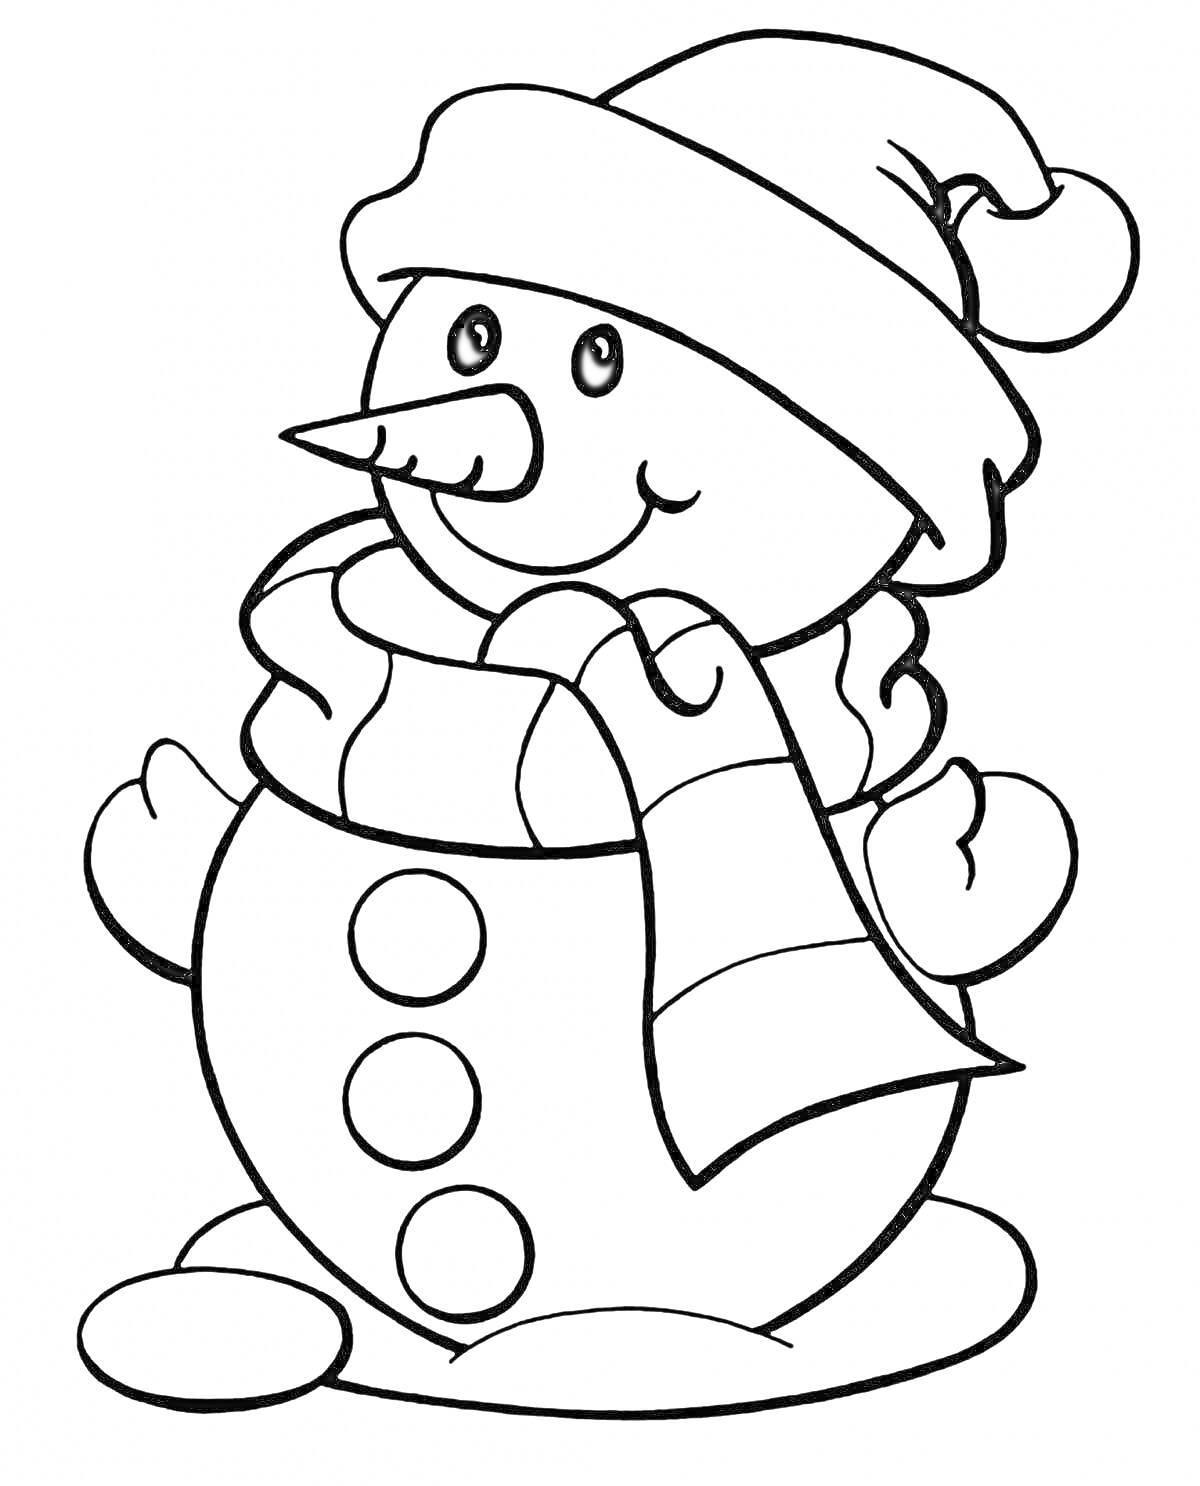 Раскраска Снеговик в шапке и шарфе с пуговицами